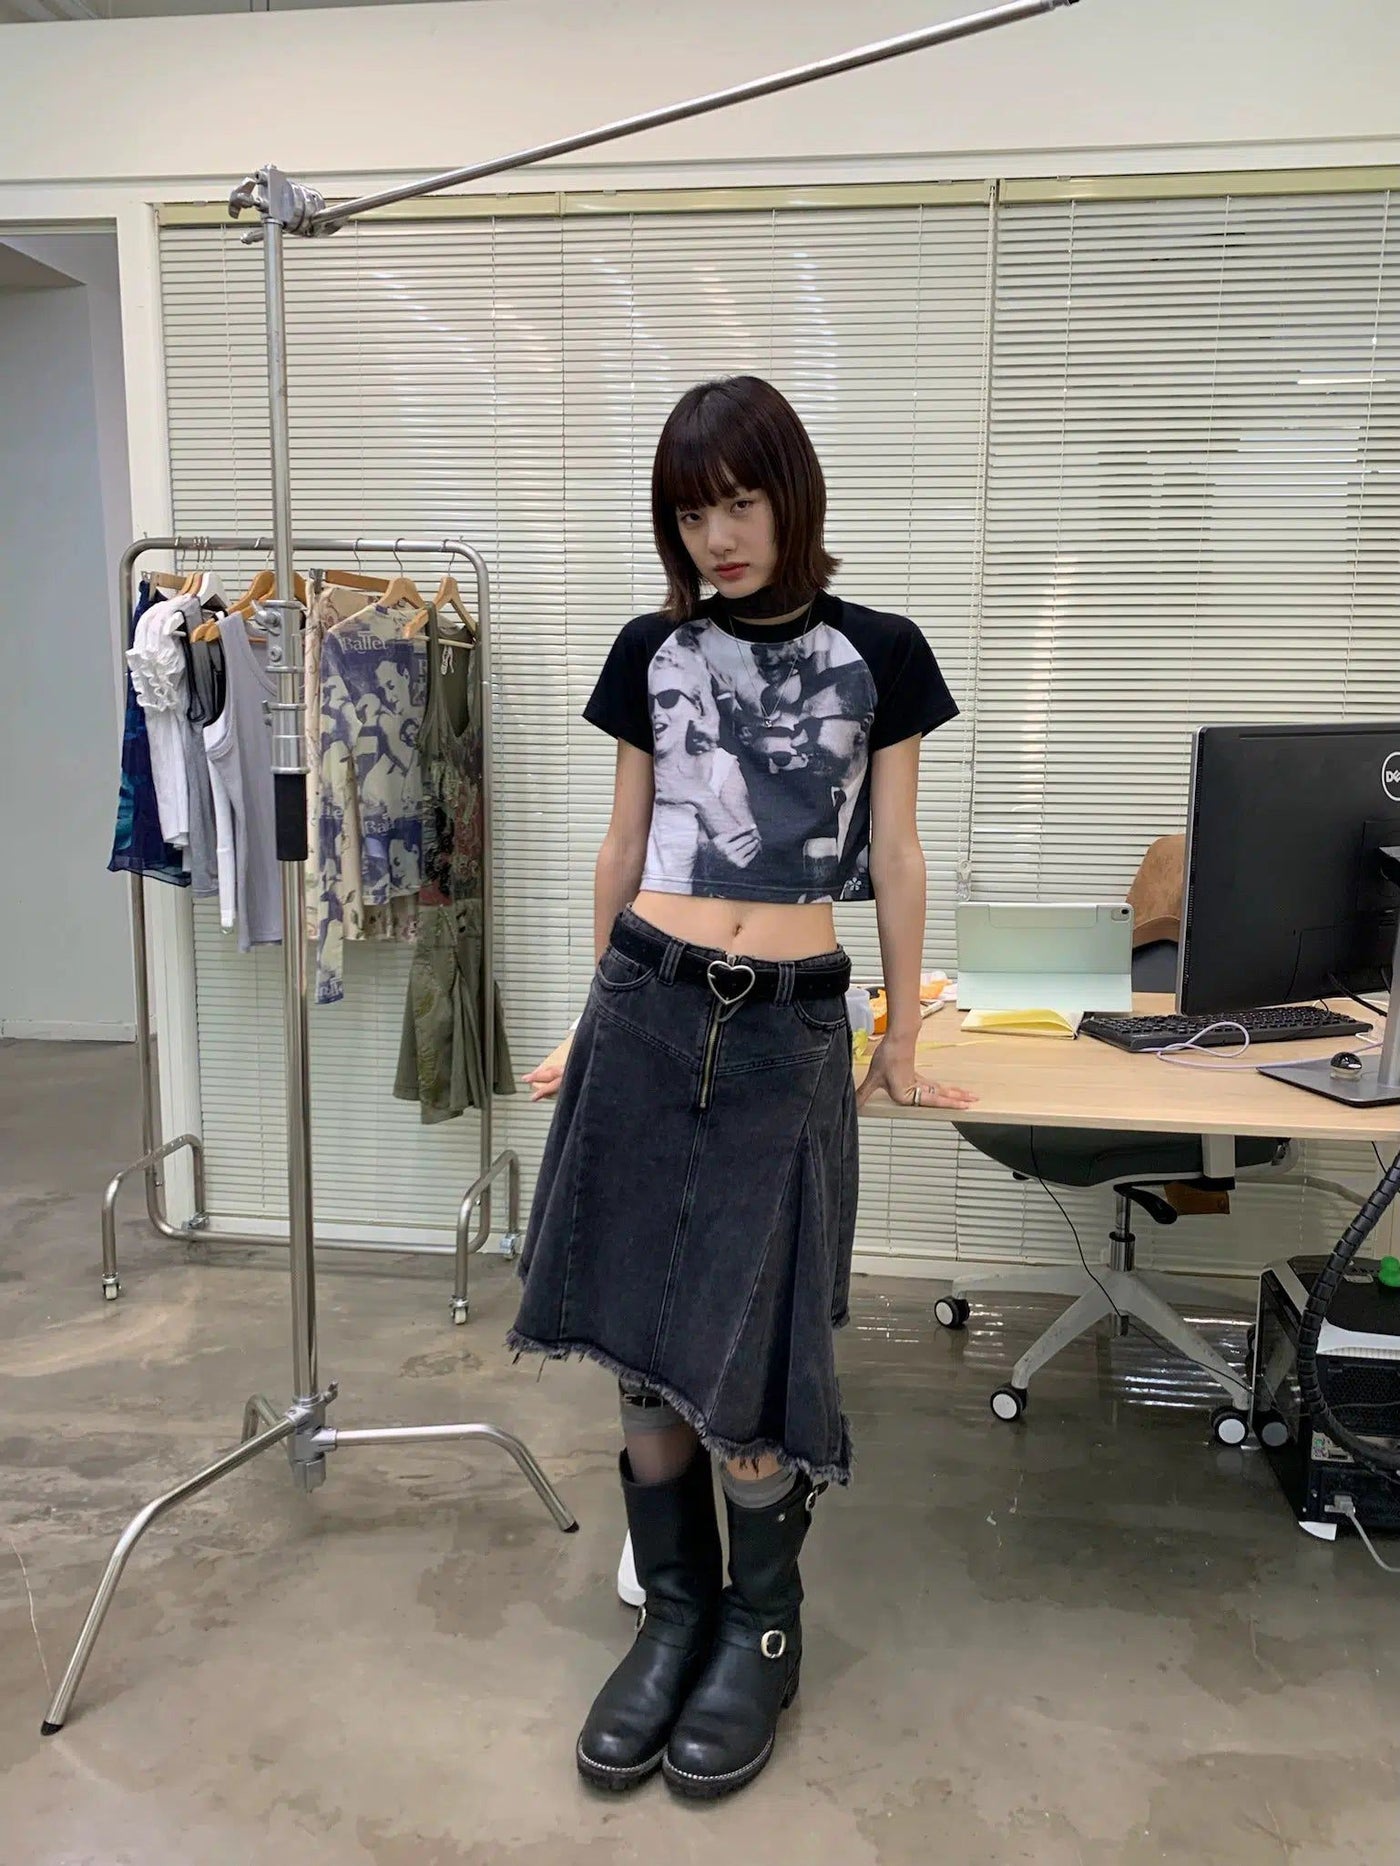 Assymetric Cut Denim Skirt Korean Street Fashion Skirt By NeverSeez Shop Online at OH Vault